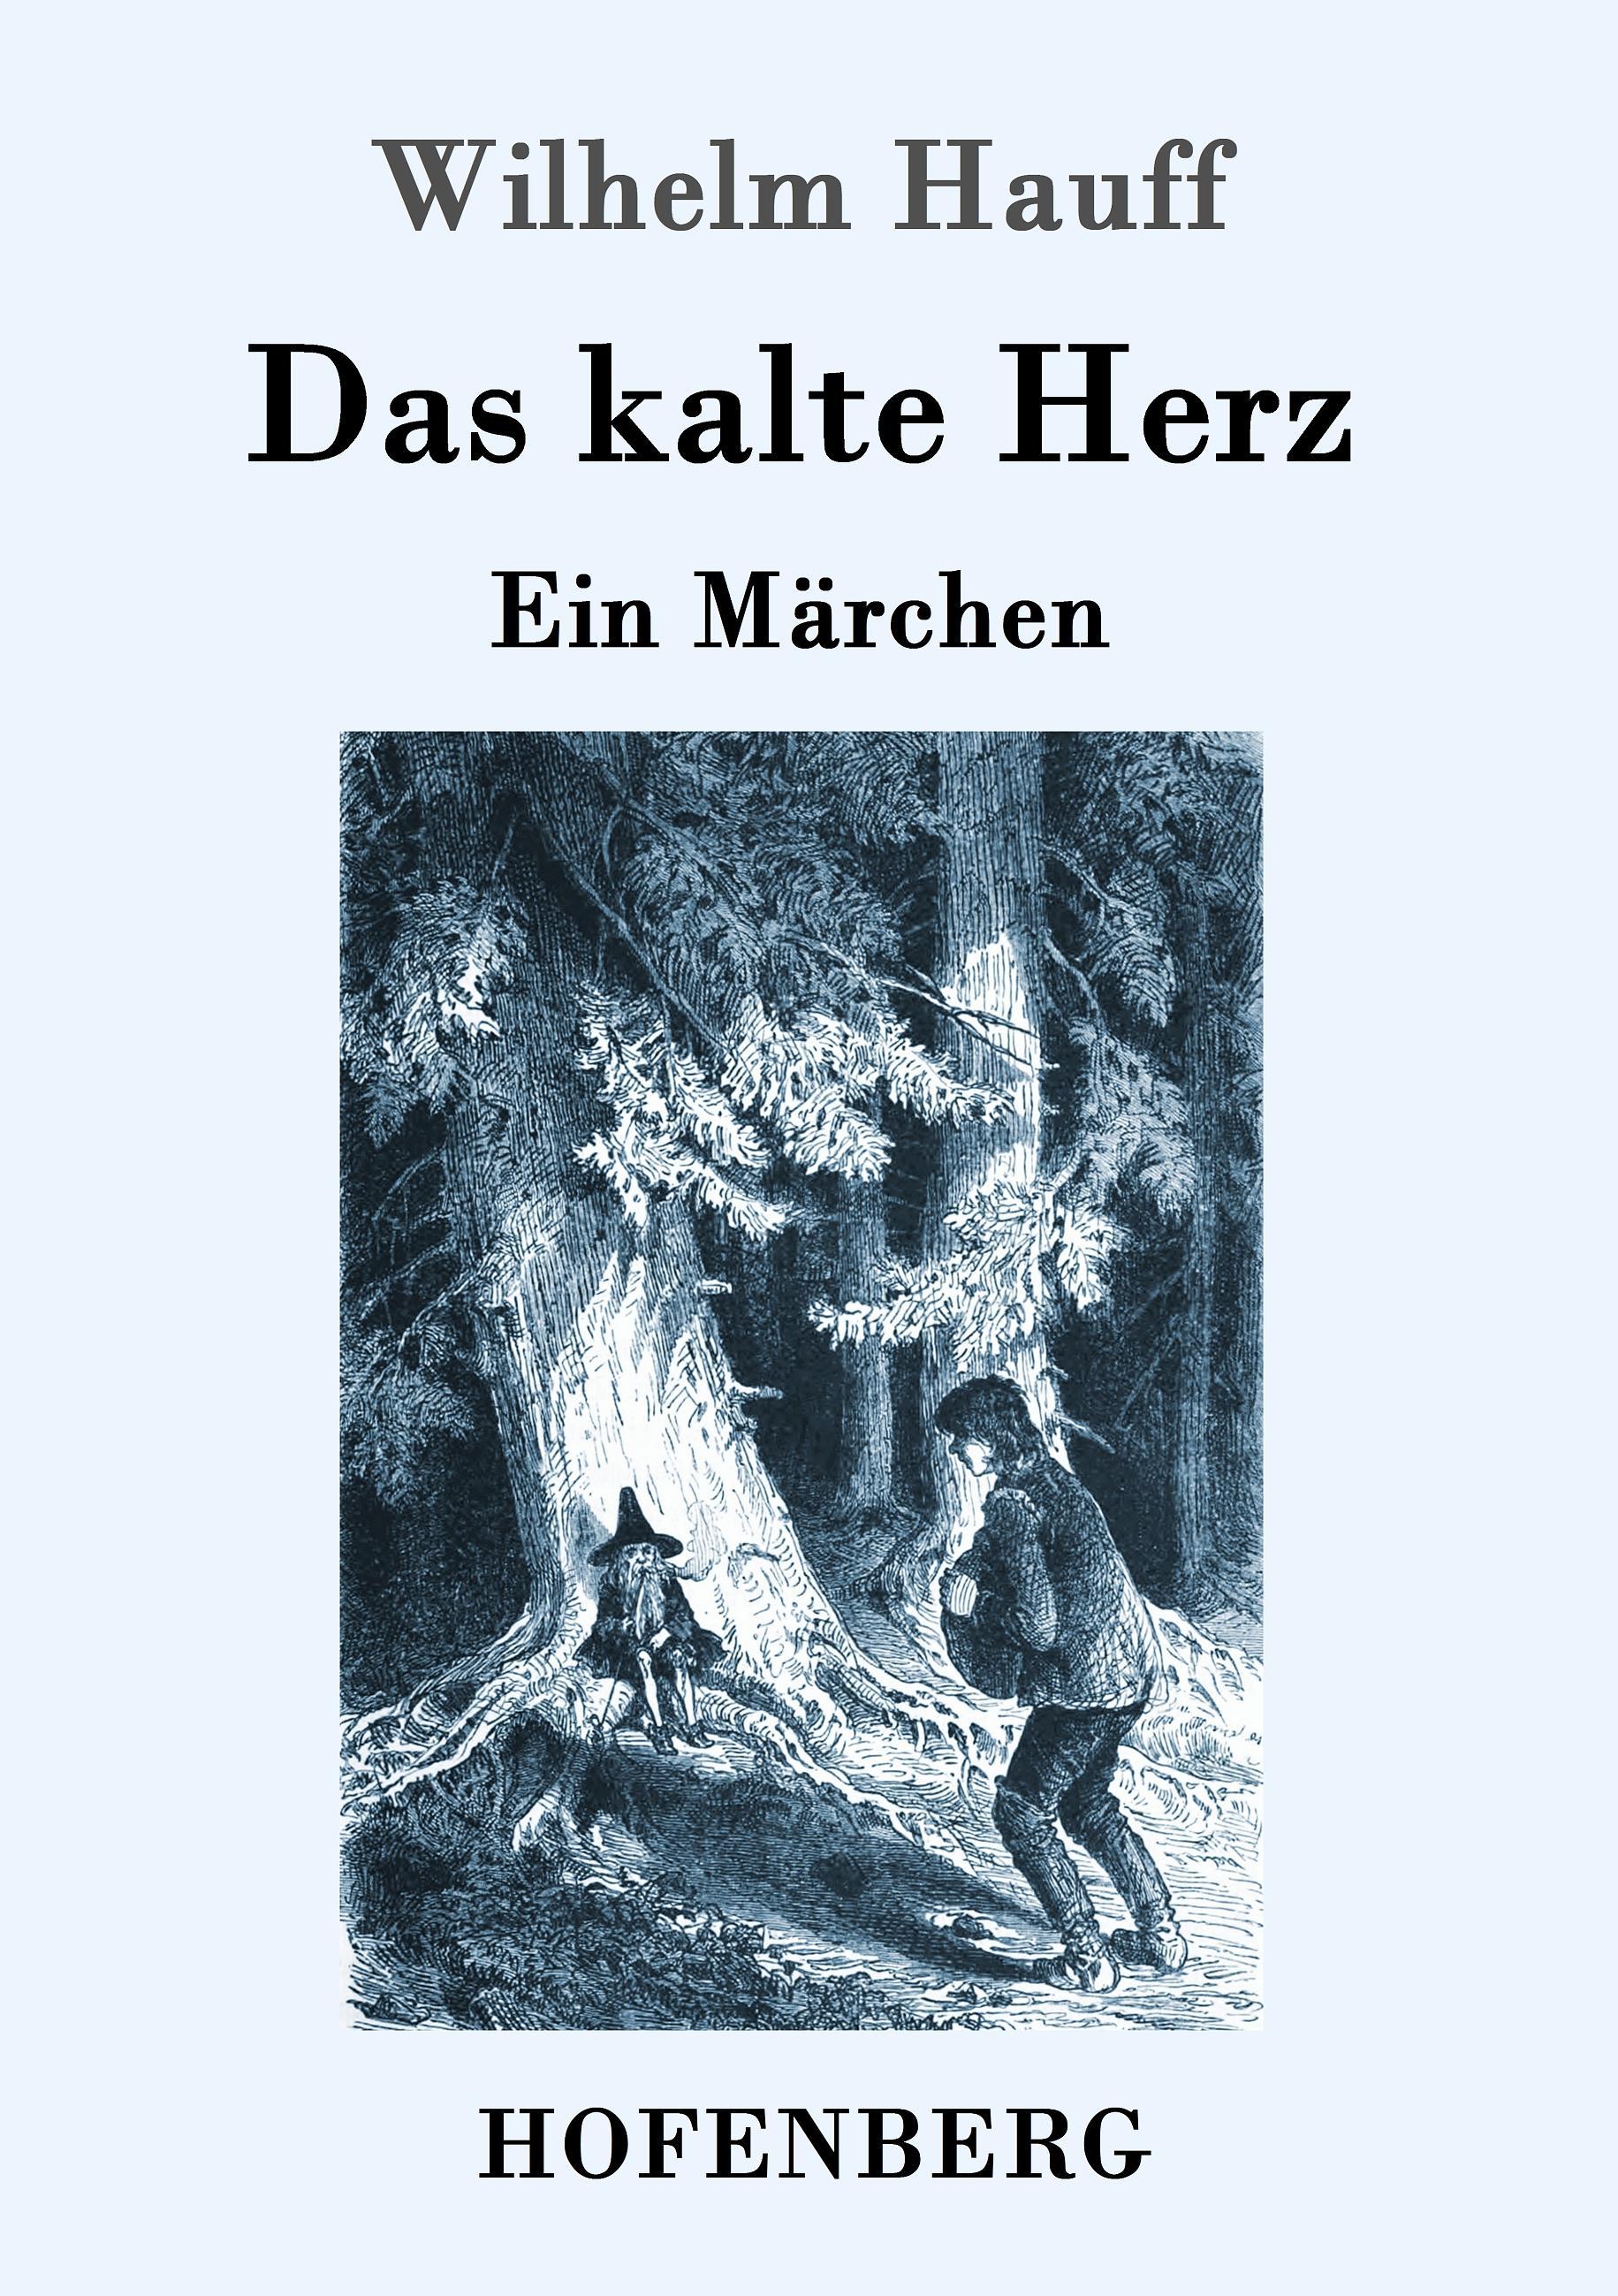 Das kalte Herz | Ein Märchen | Wilhelm Hauff | Taschenbuch | Paperback | 48 S. | Deutsch | 2016 | Hofenberg | EAN 9783861996675 - Hauff, Wilhelm